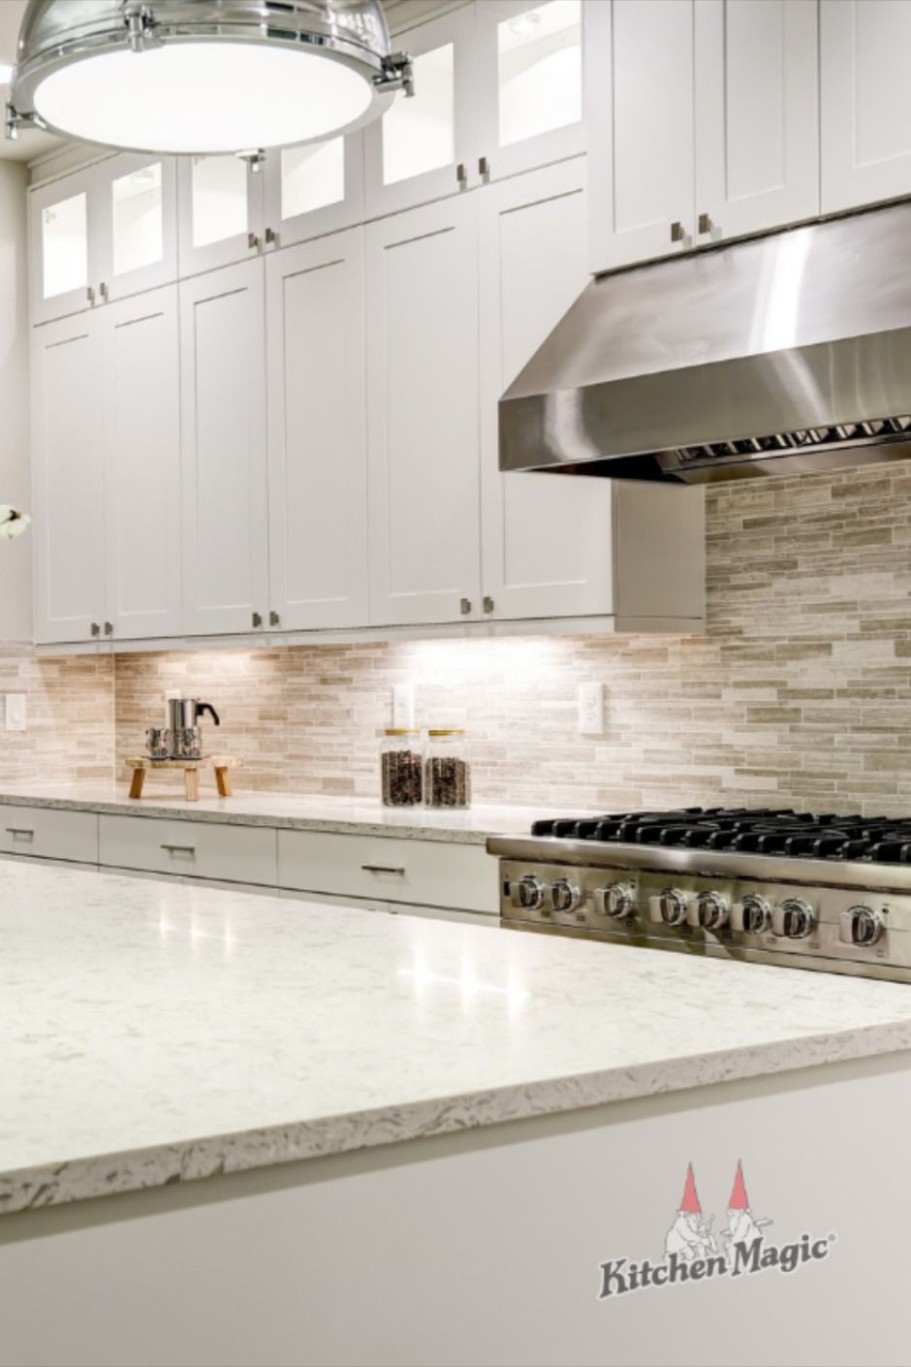 5 White Kitchens ideas in 5  kitchen design, kitchen remodel  - white kitchens pinterest